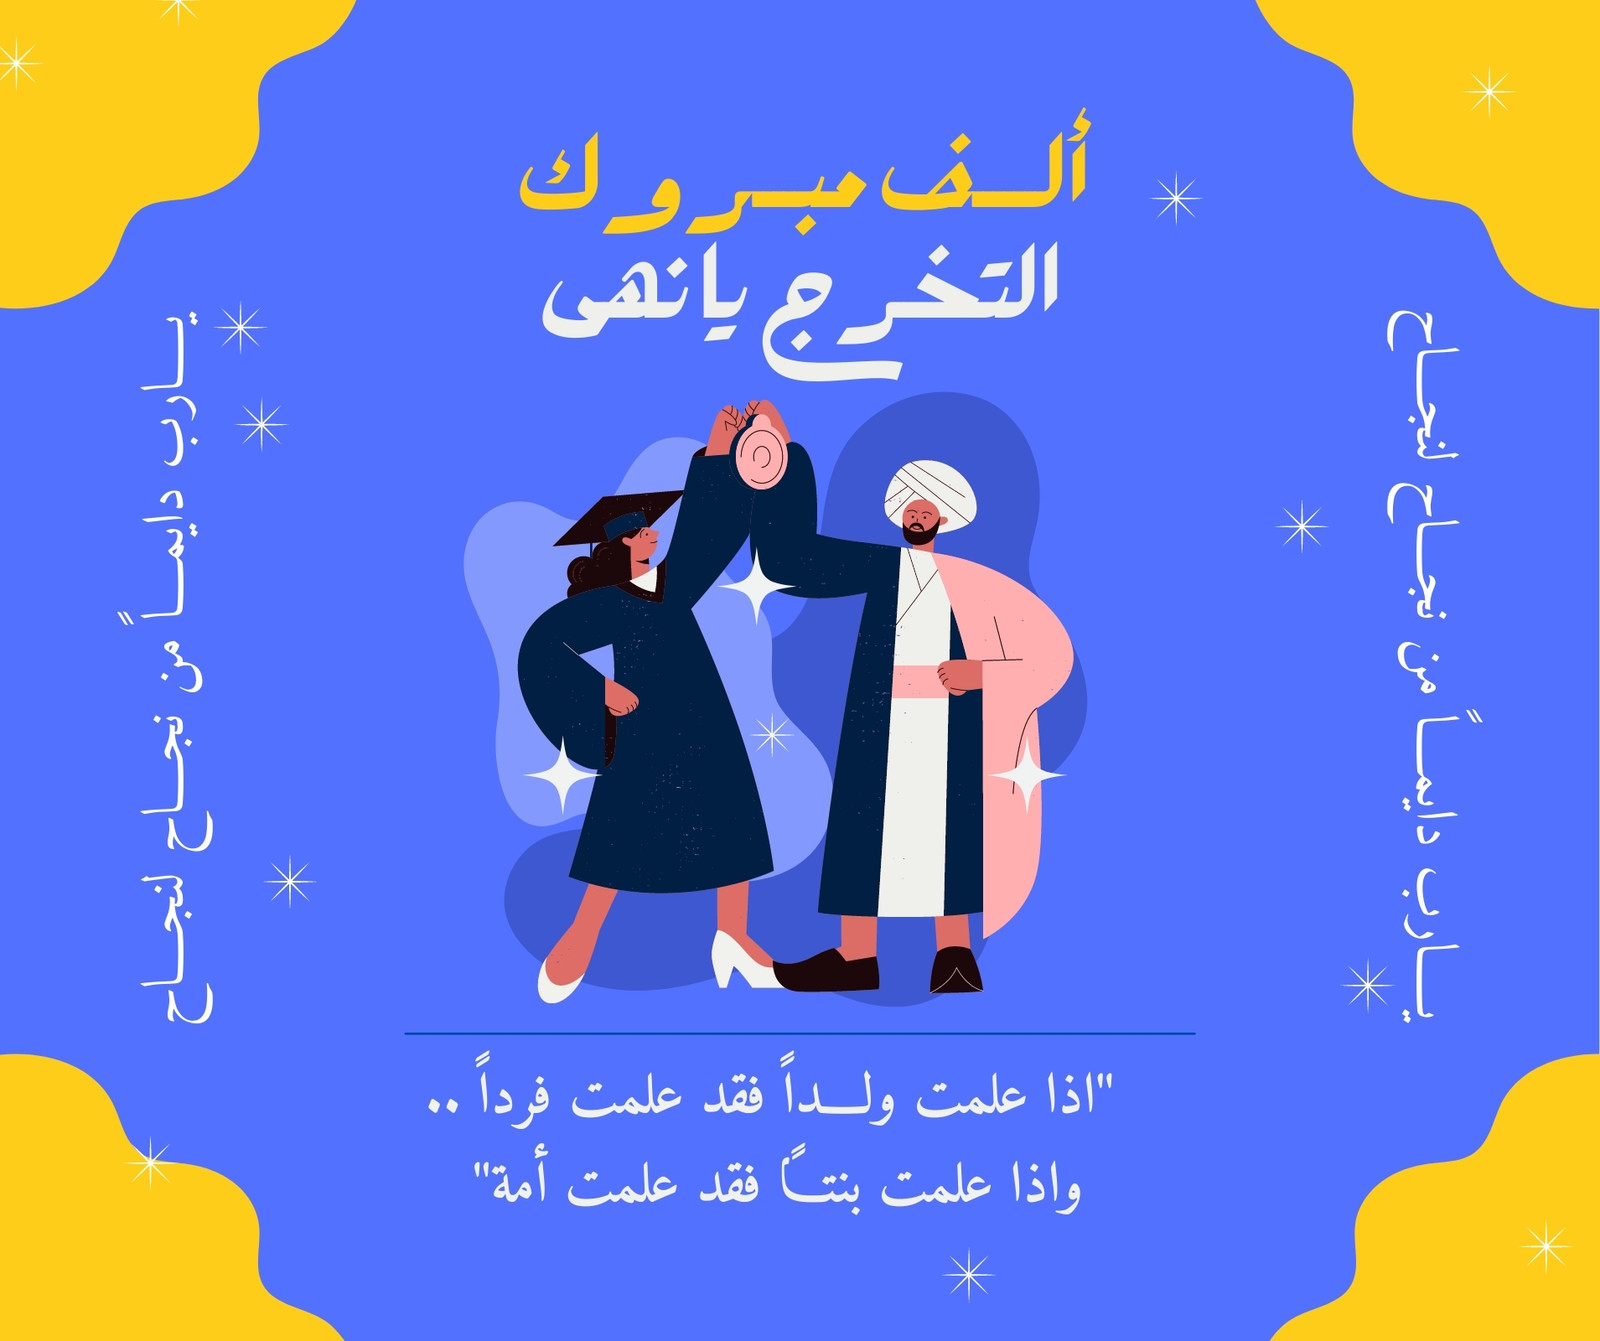 منشور فيسبوك (أفقي) مقولة عربية عن العلم وتهنئة طالبة بالتخرج من الجامعة